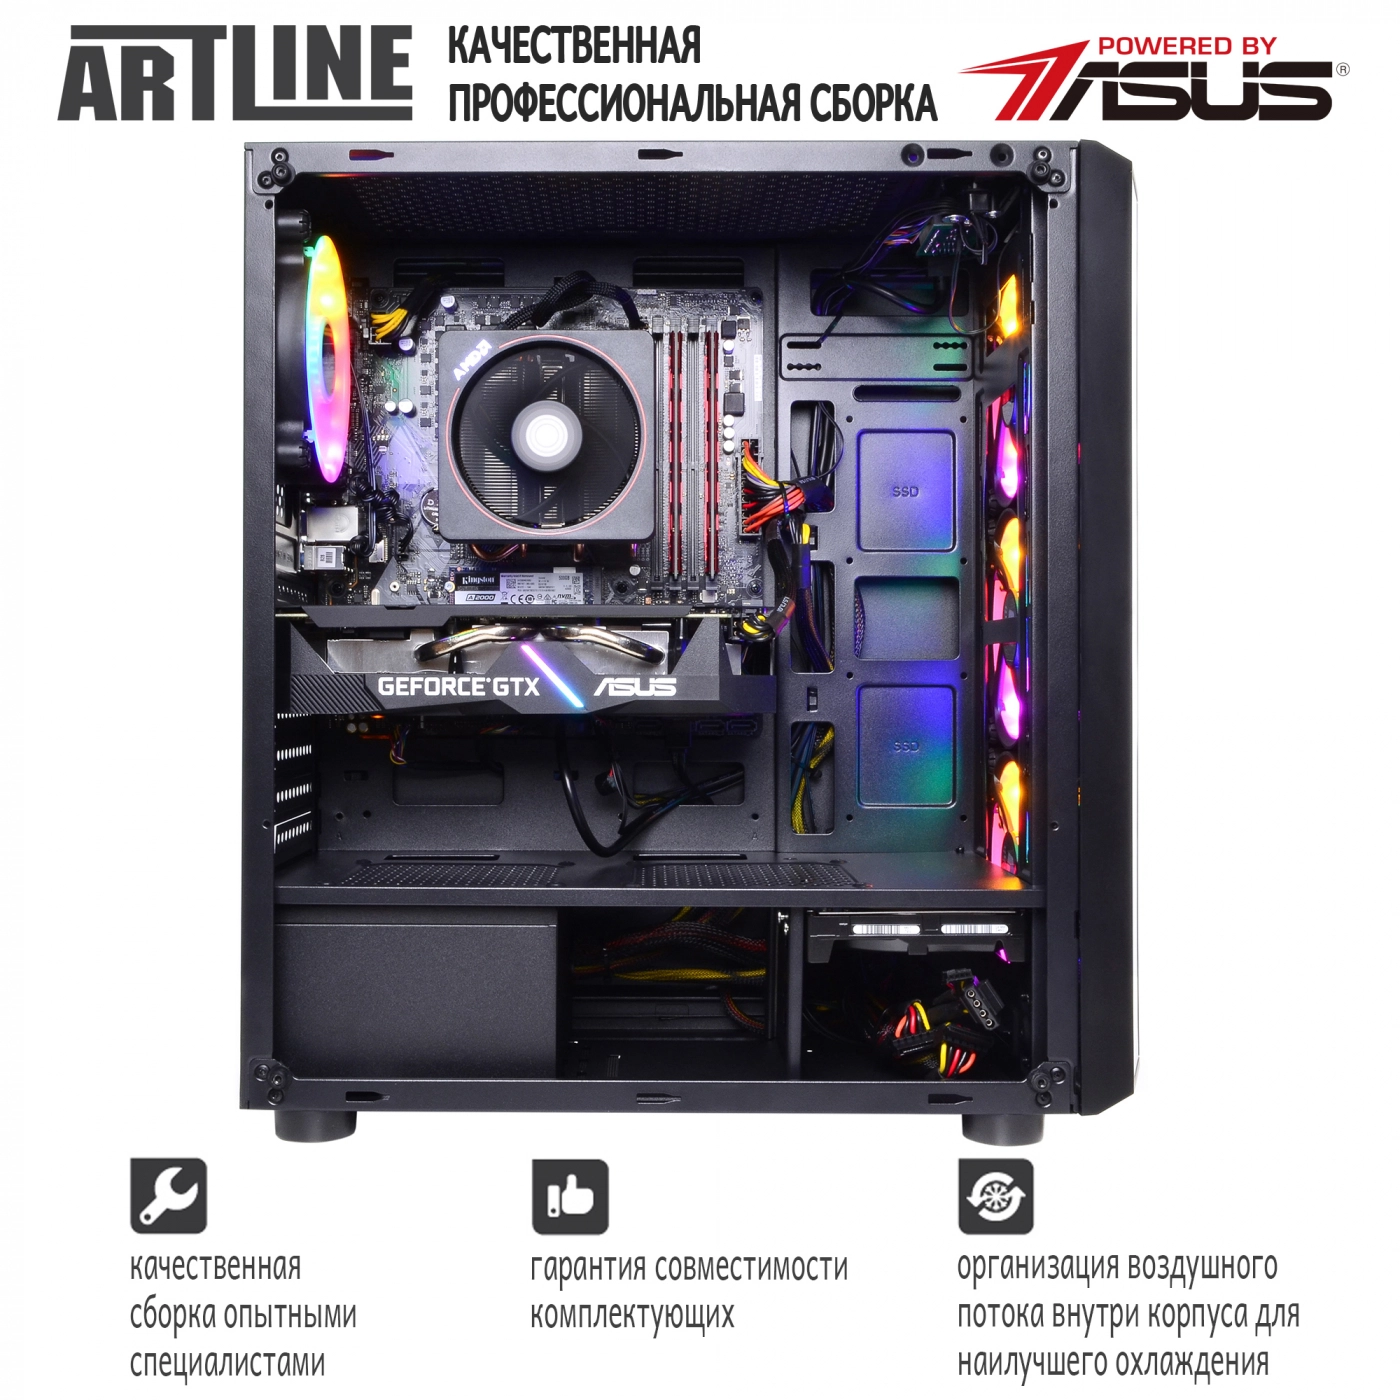 Купить Компьютер ARTLINE Gaming X45v17 - фото 9